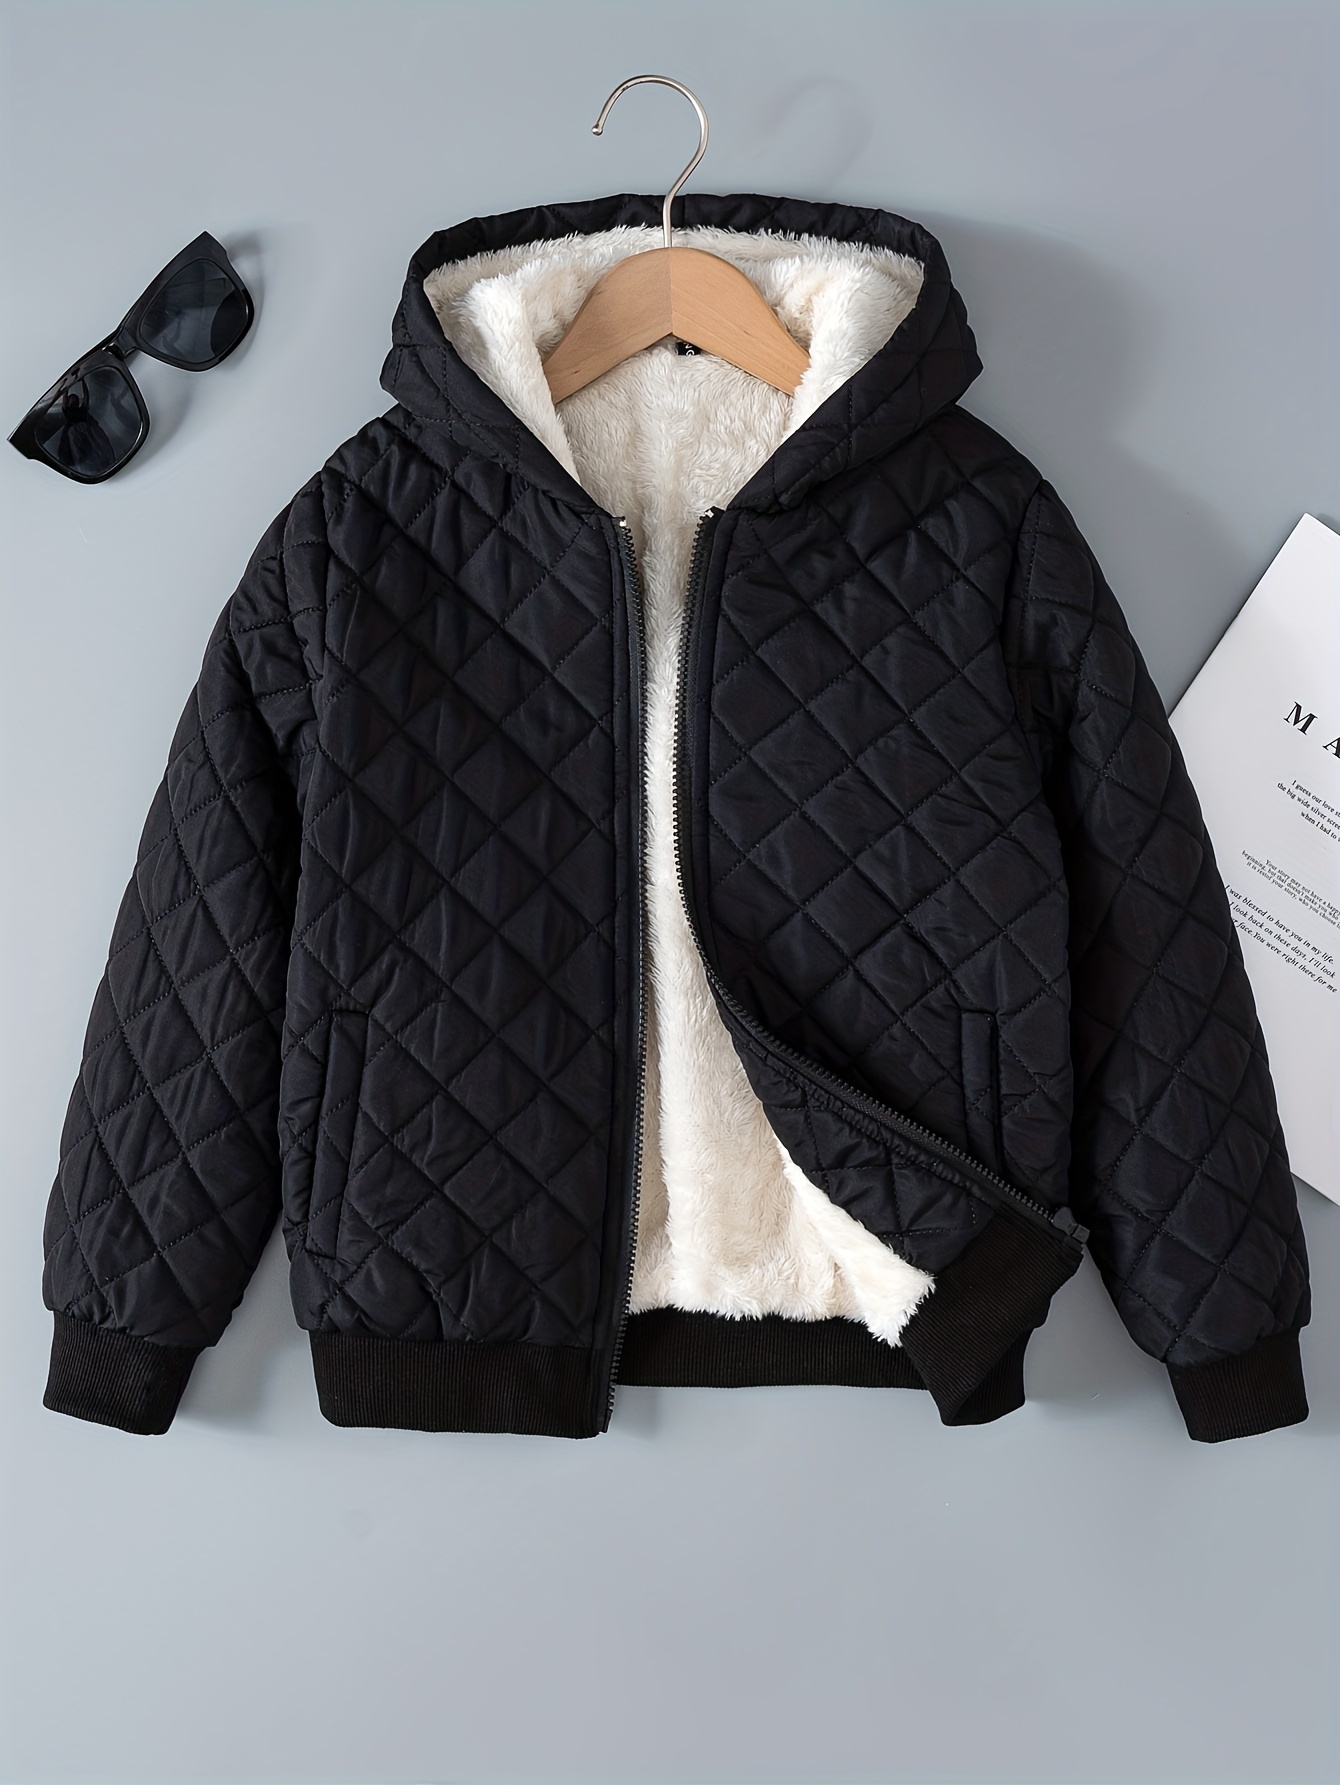 Comprar Parka con forro polar para niño, chaqueta cálida